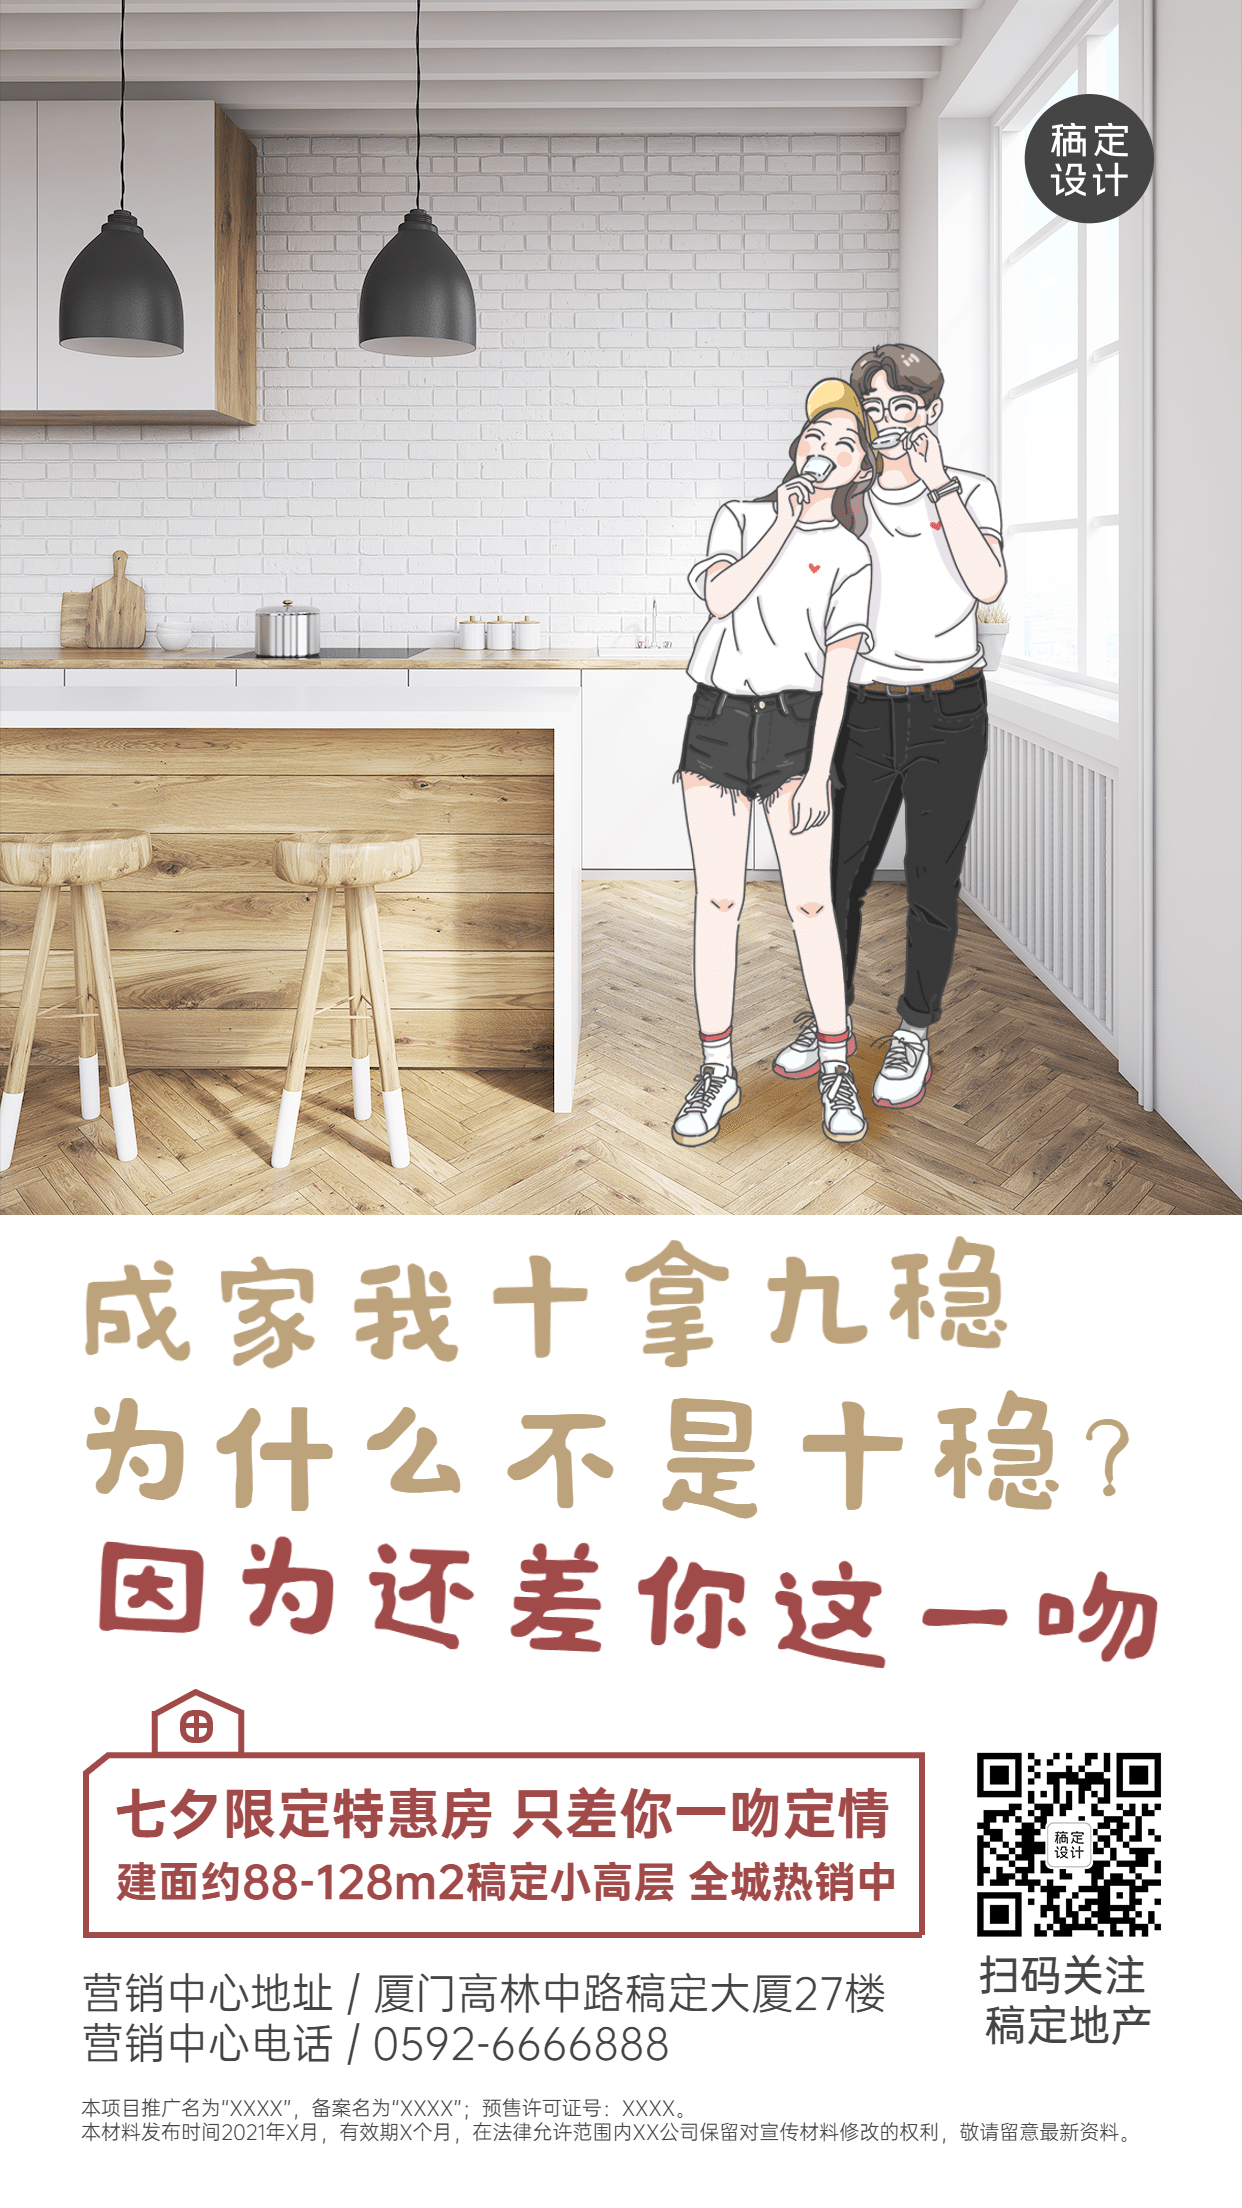 七夕房地产促销活动节日营销手绘海报